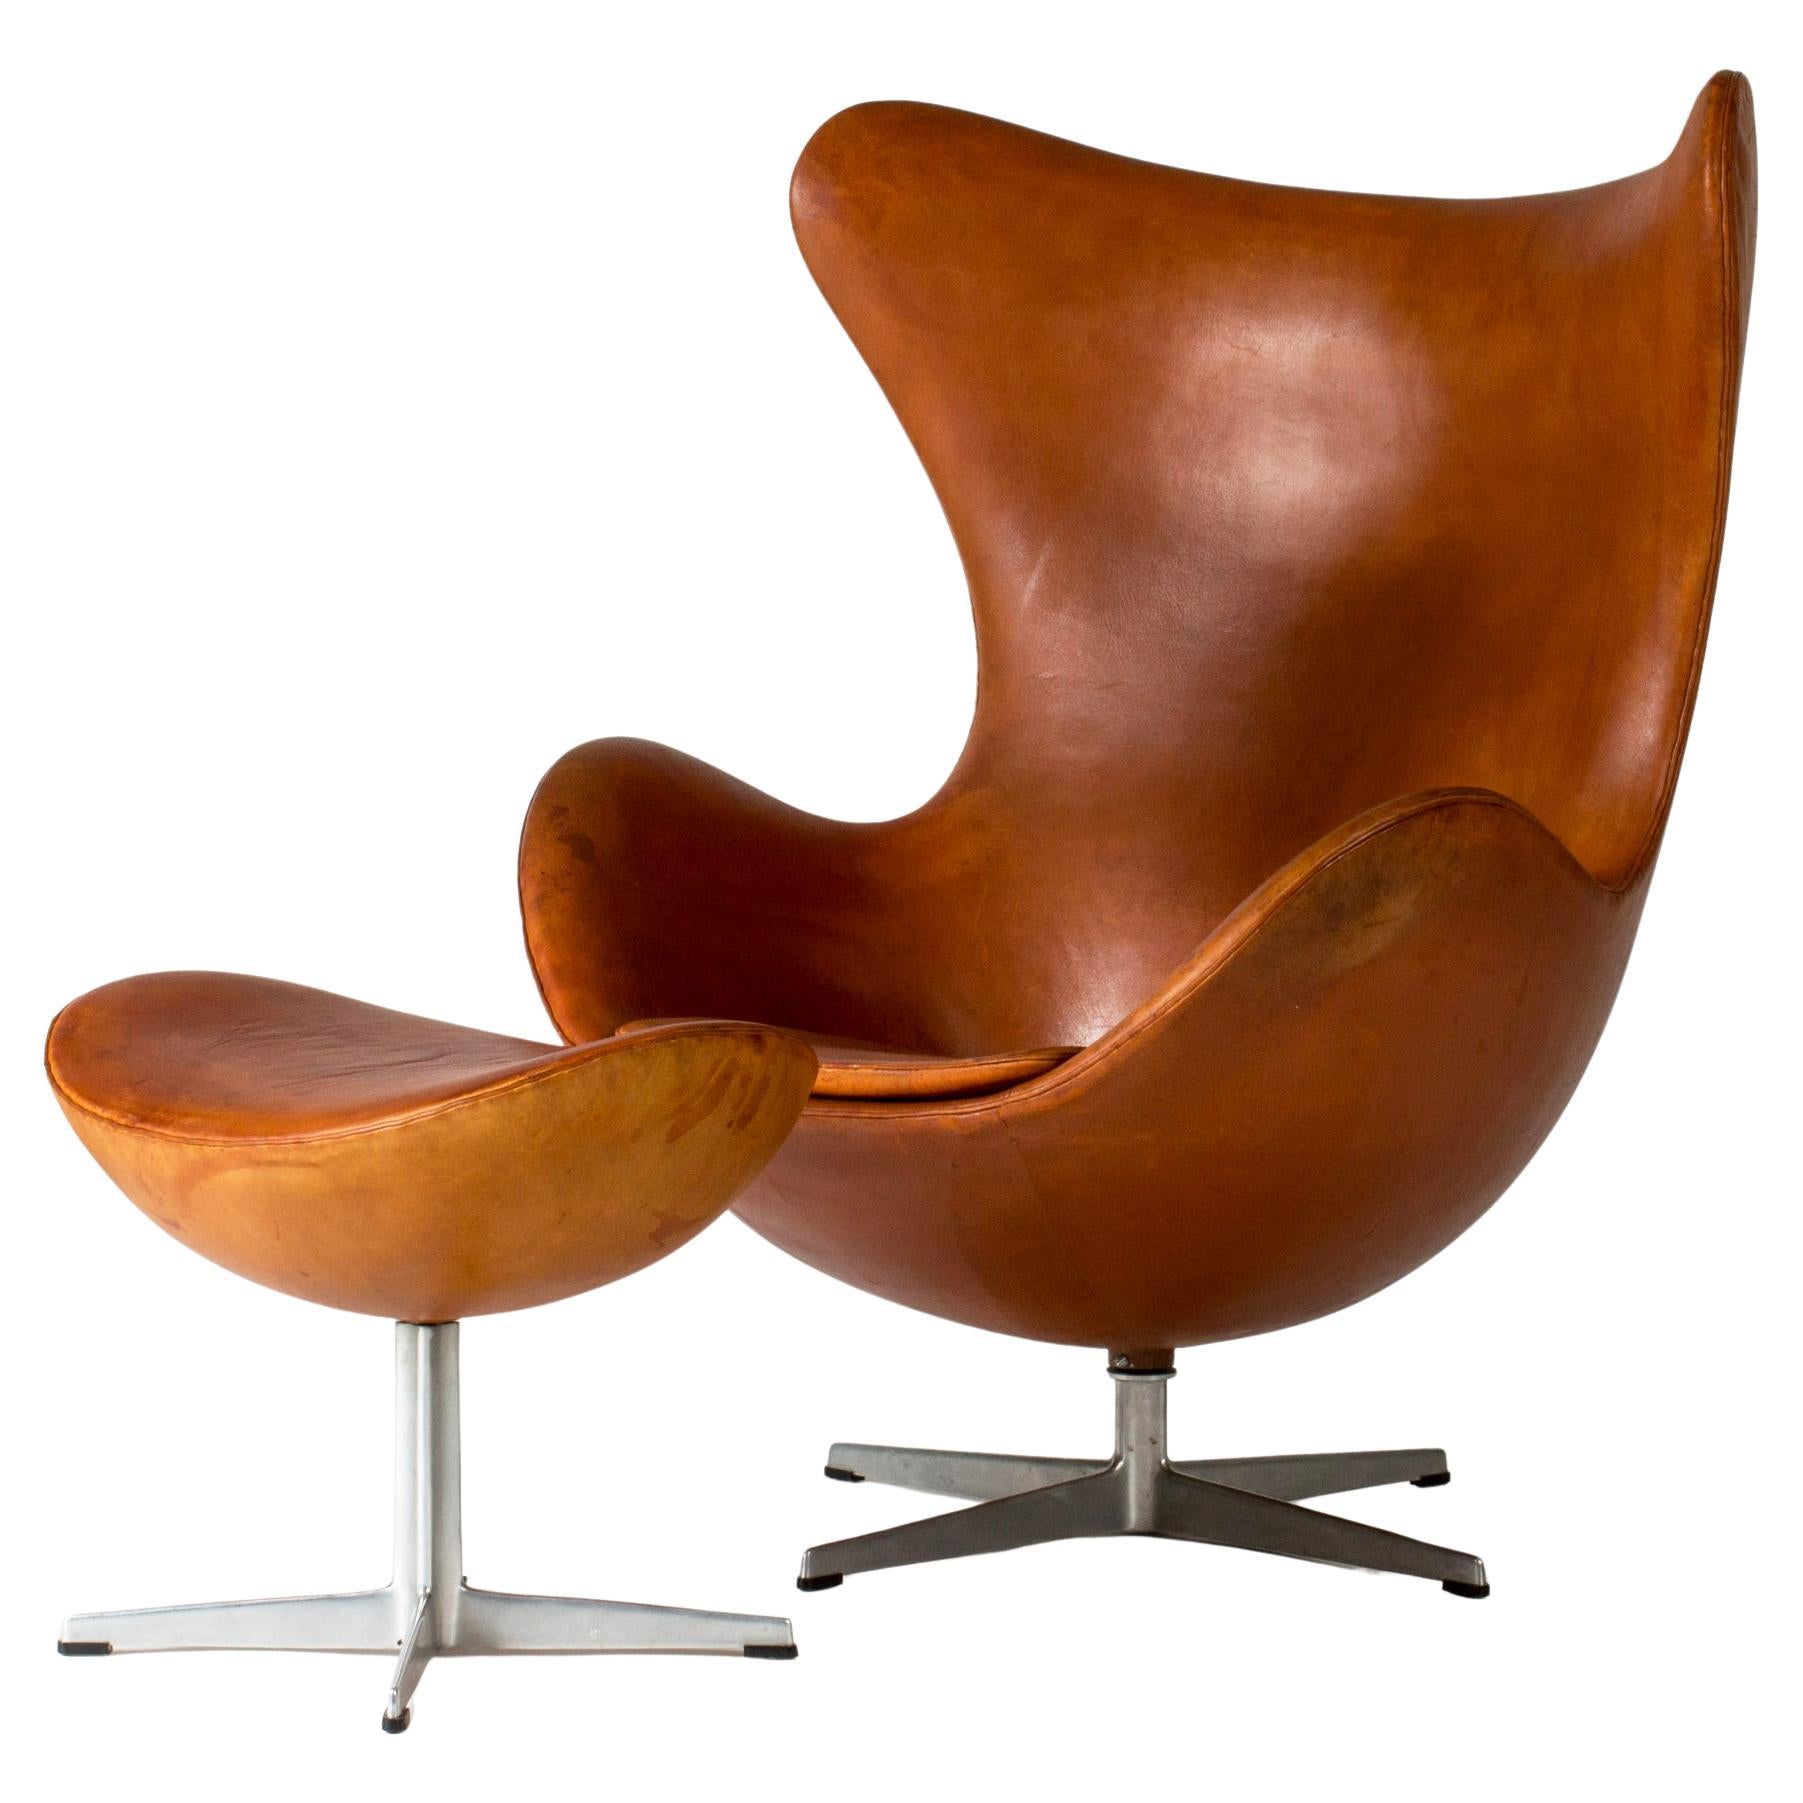 Midcentury Modern "Egg" Lounge Chair and ottoman, Arne Jacobsen, Denmark, 1950s For Sale